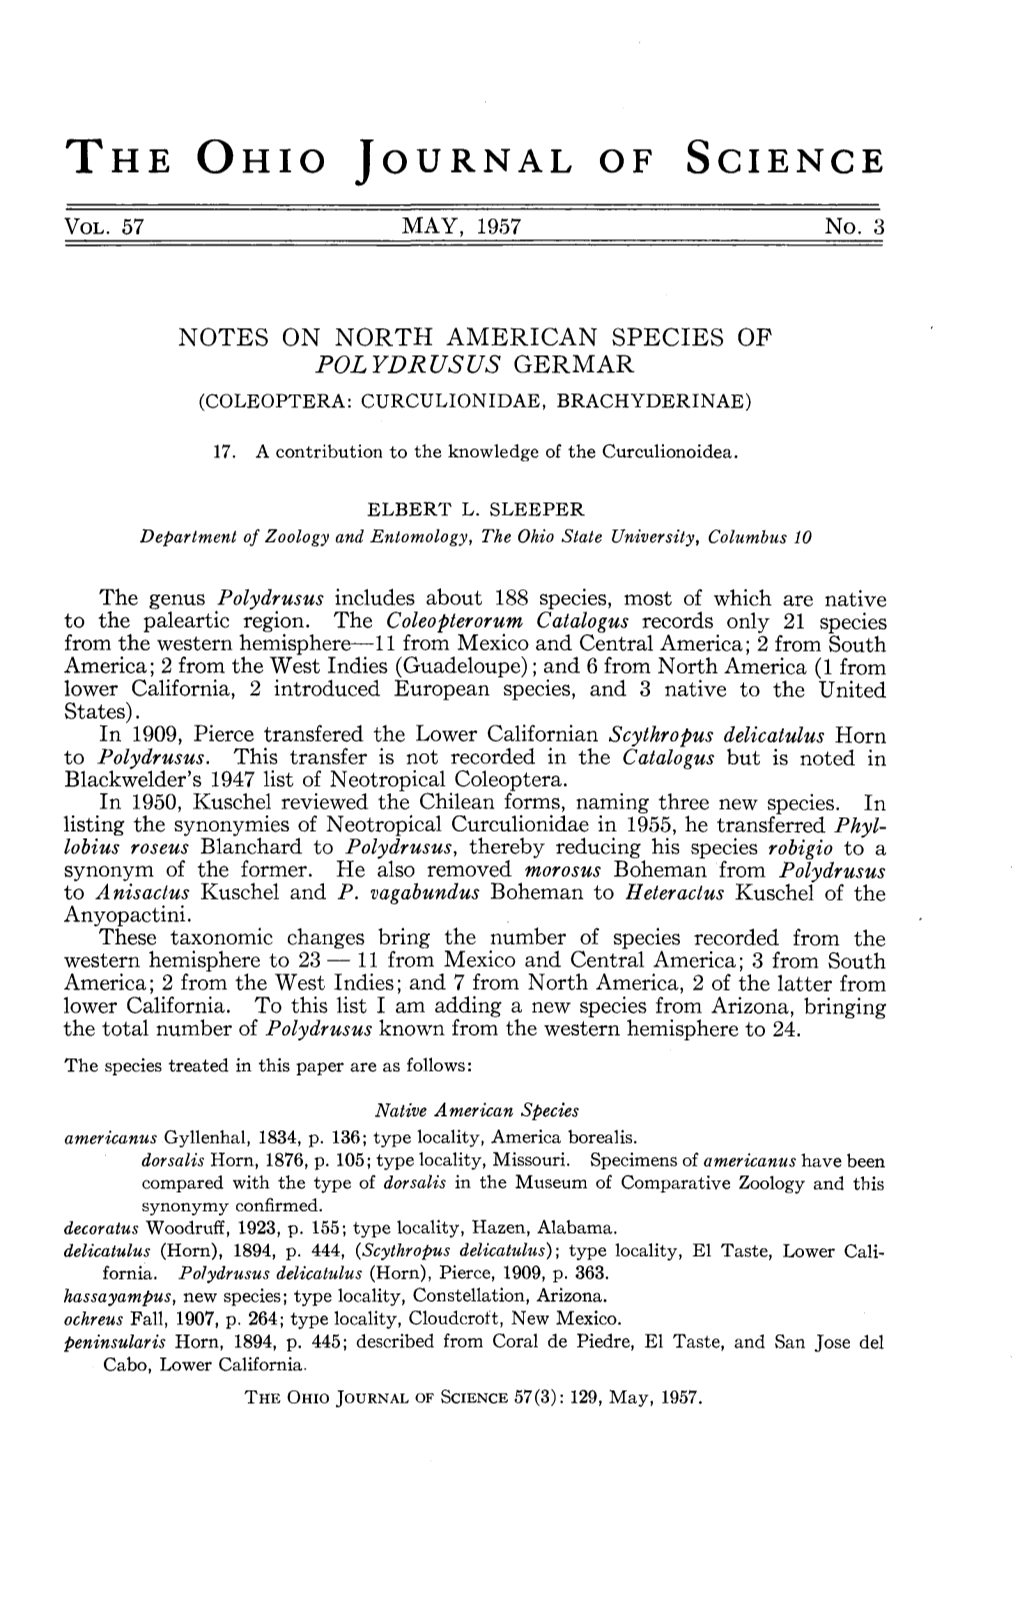 Notes on North American Species of Polydrusus Germar (Coleoptera: Curculionidae, Brachyderinae)